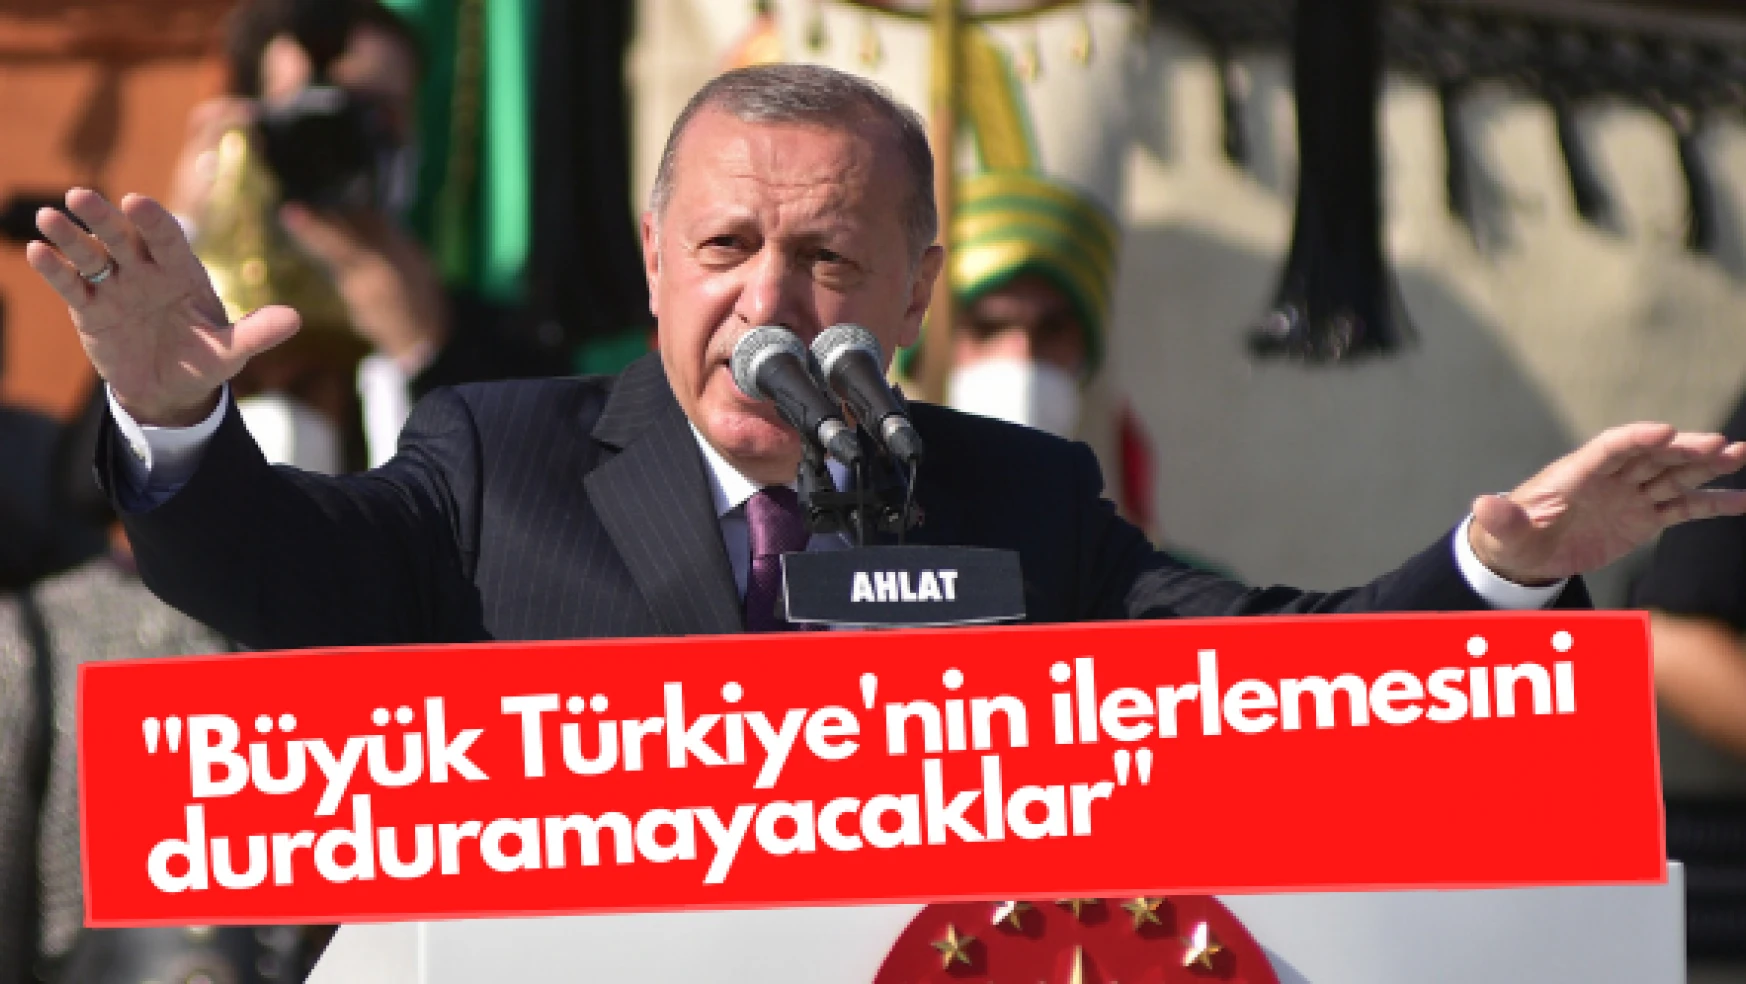 Erdoğan: &quotAdalet ve refaha az kaldı"